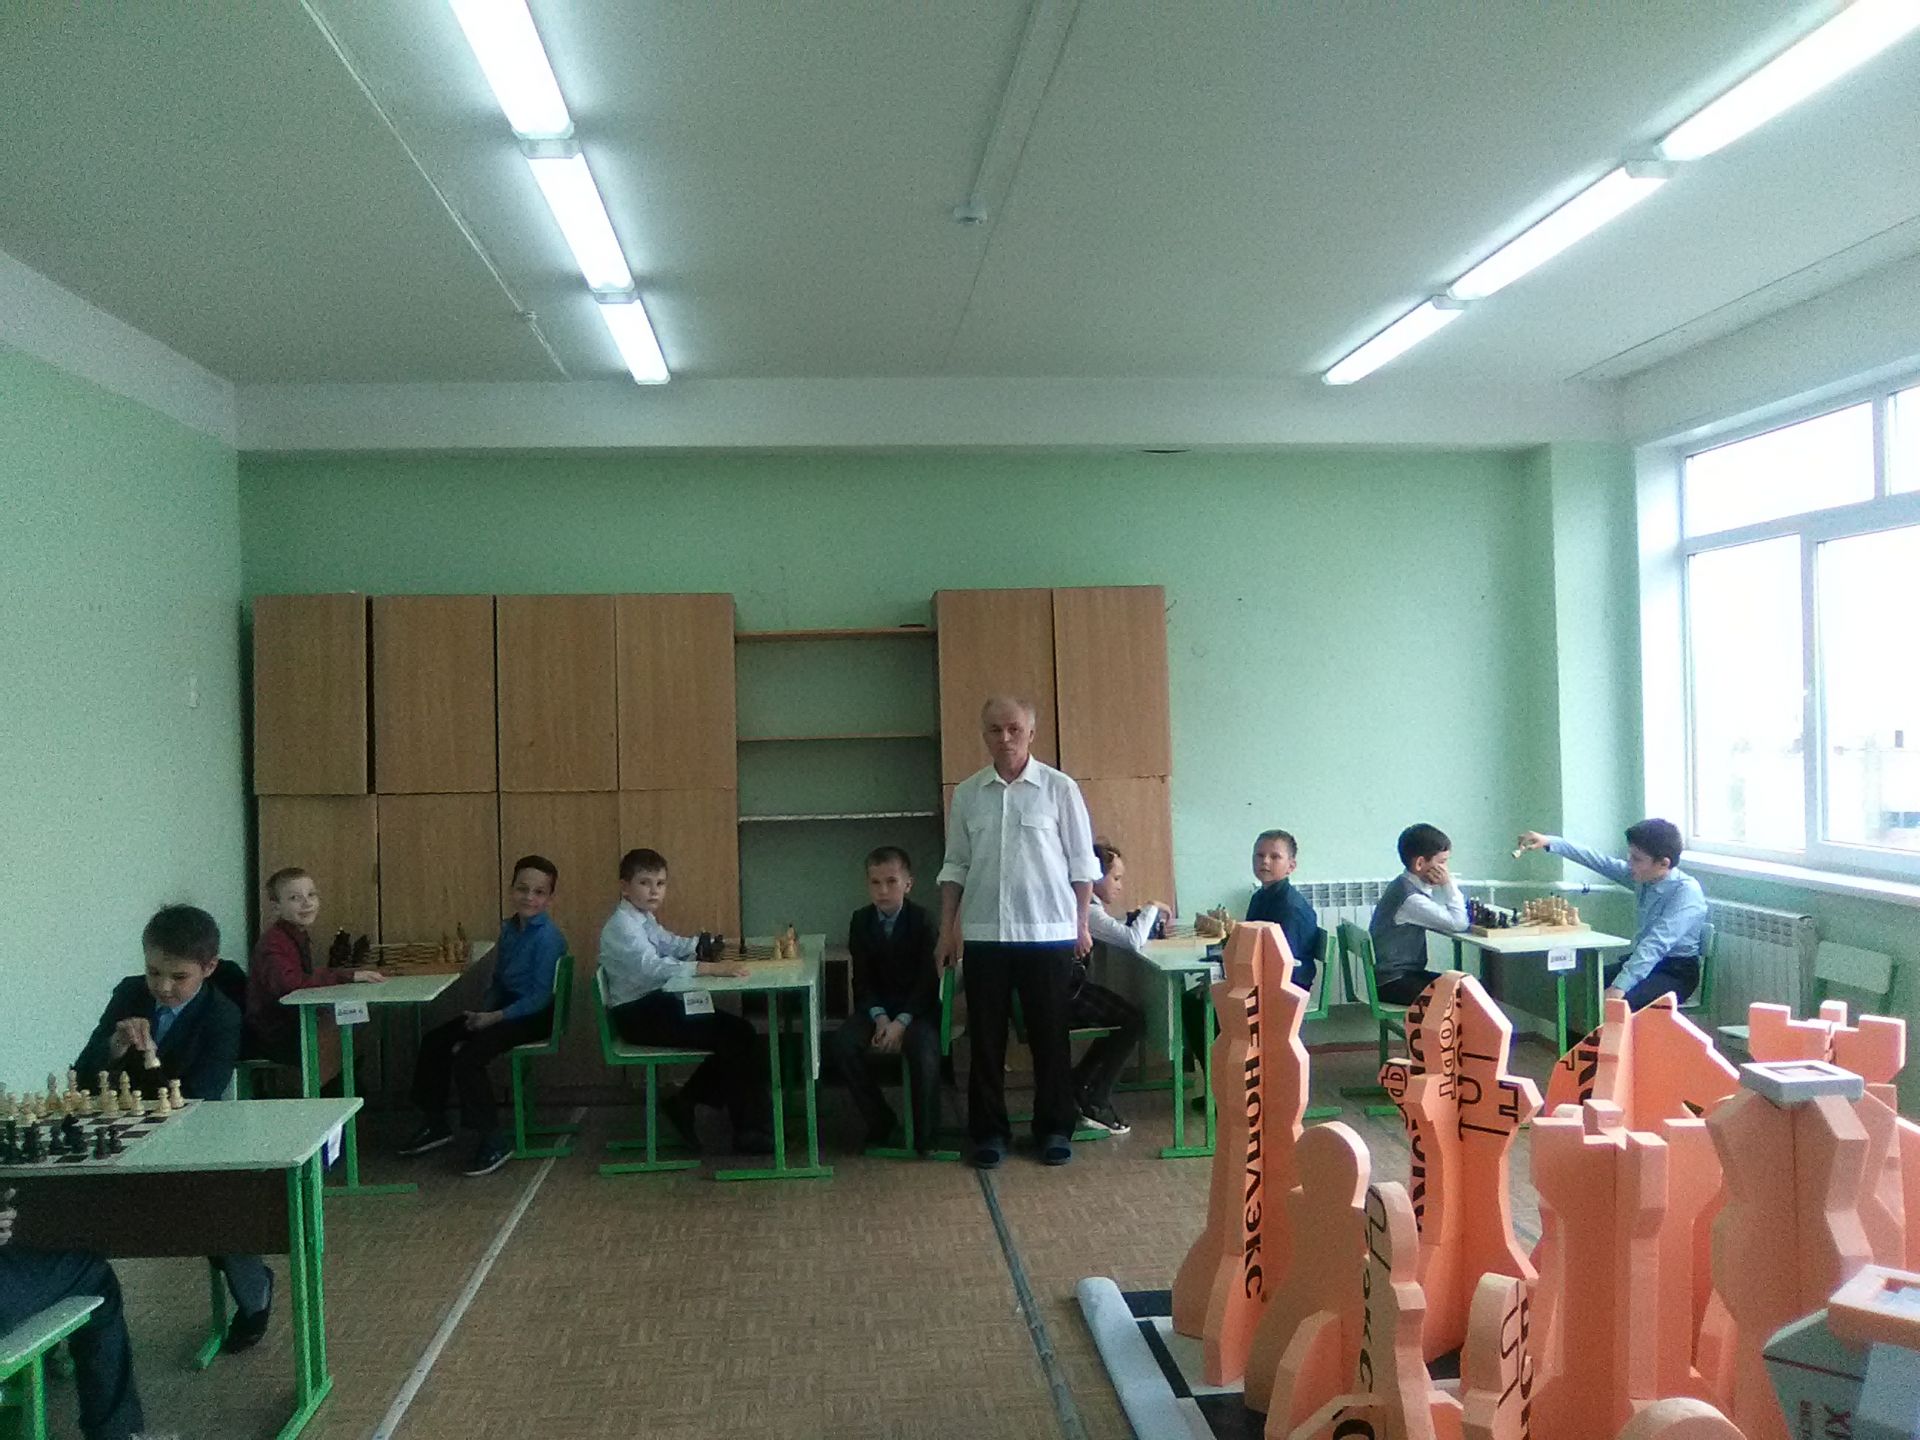 Молодежный центр «Алан» провел шахматный турнир среди учащихся школ Камских Полян